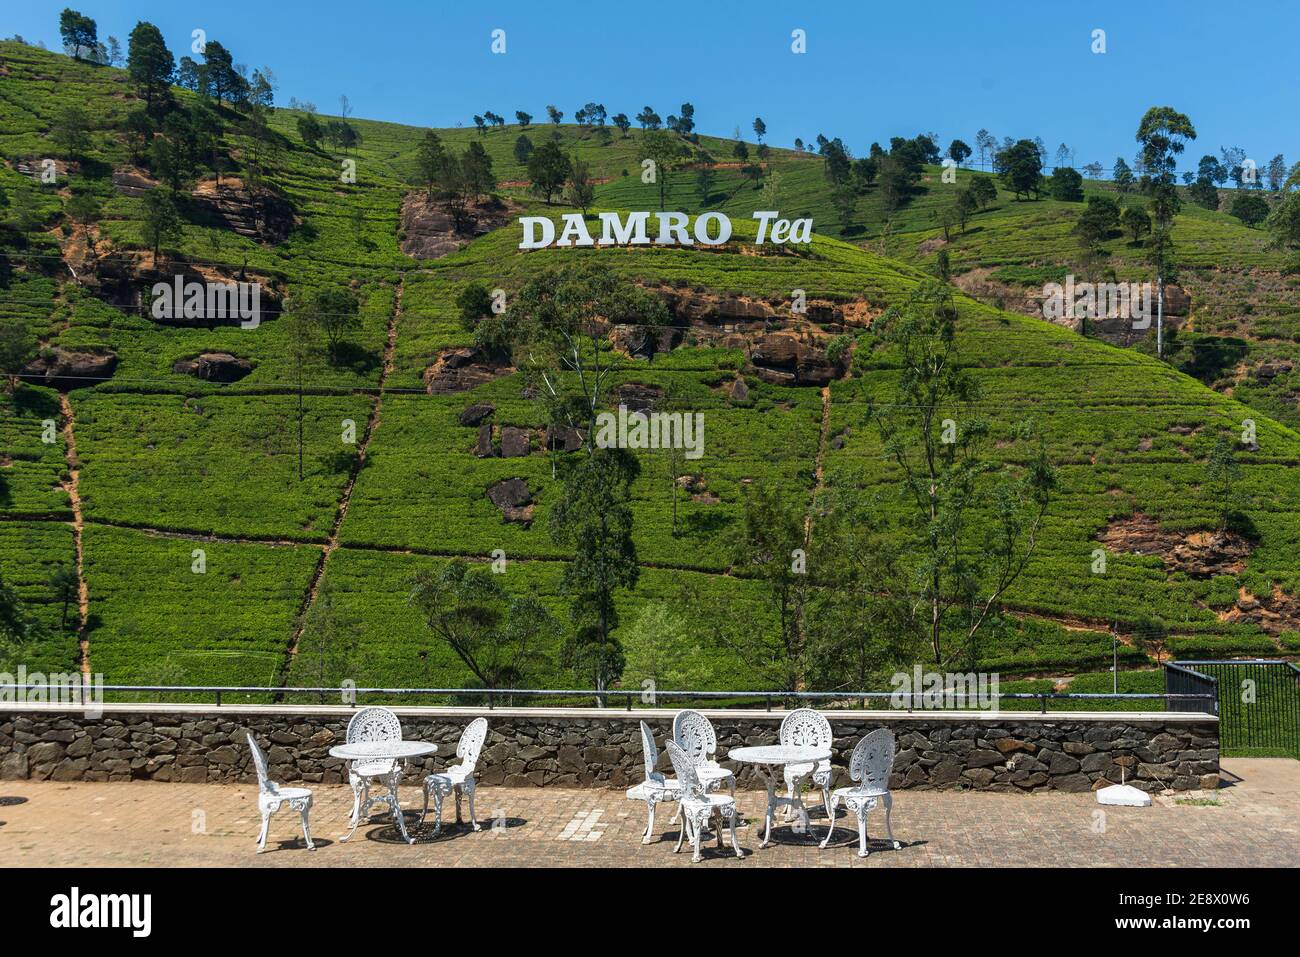 Marque de Damro. Les collines vertes des plantes de thé à la montagne sont de Sri Lanka.Tea plantation, le jardin de thé Banque D'Images